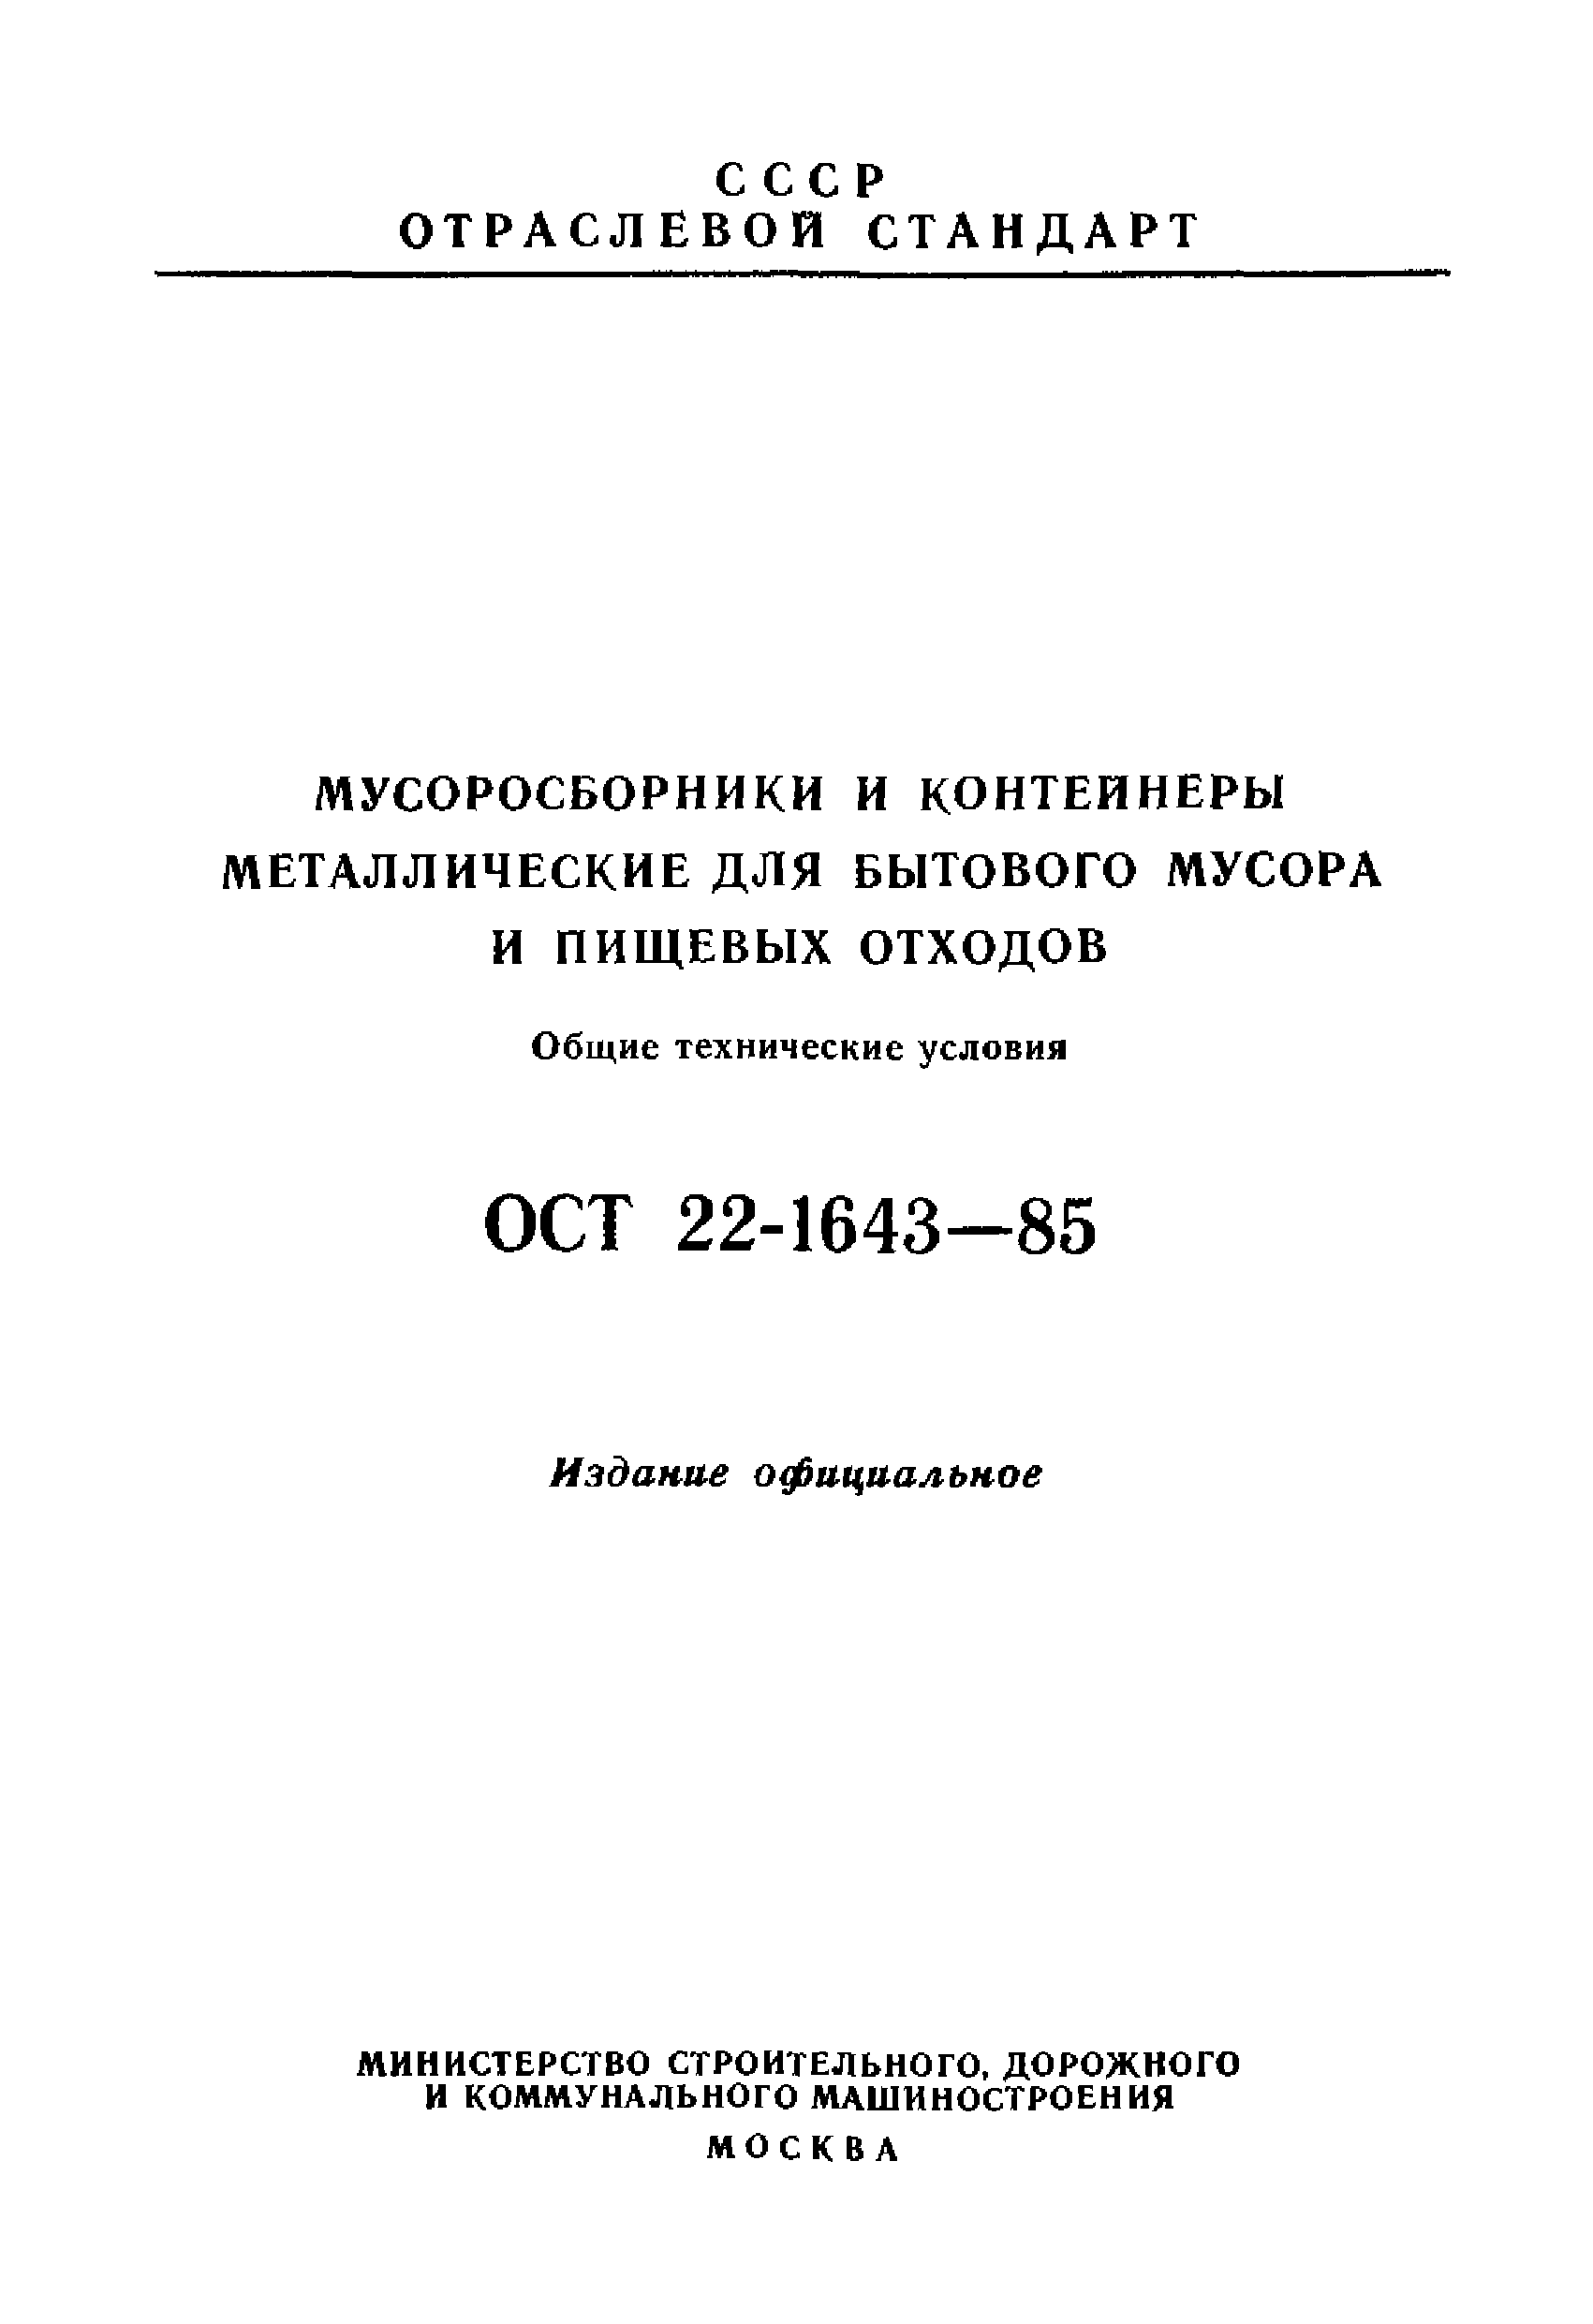 ОСТ 22-1643-85